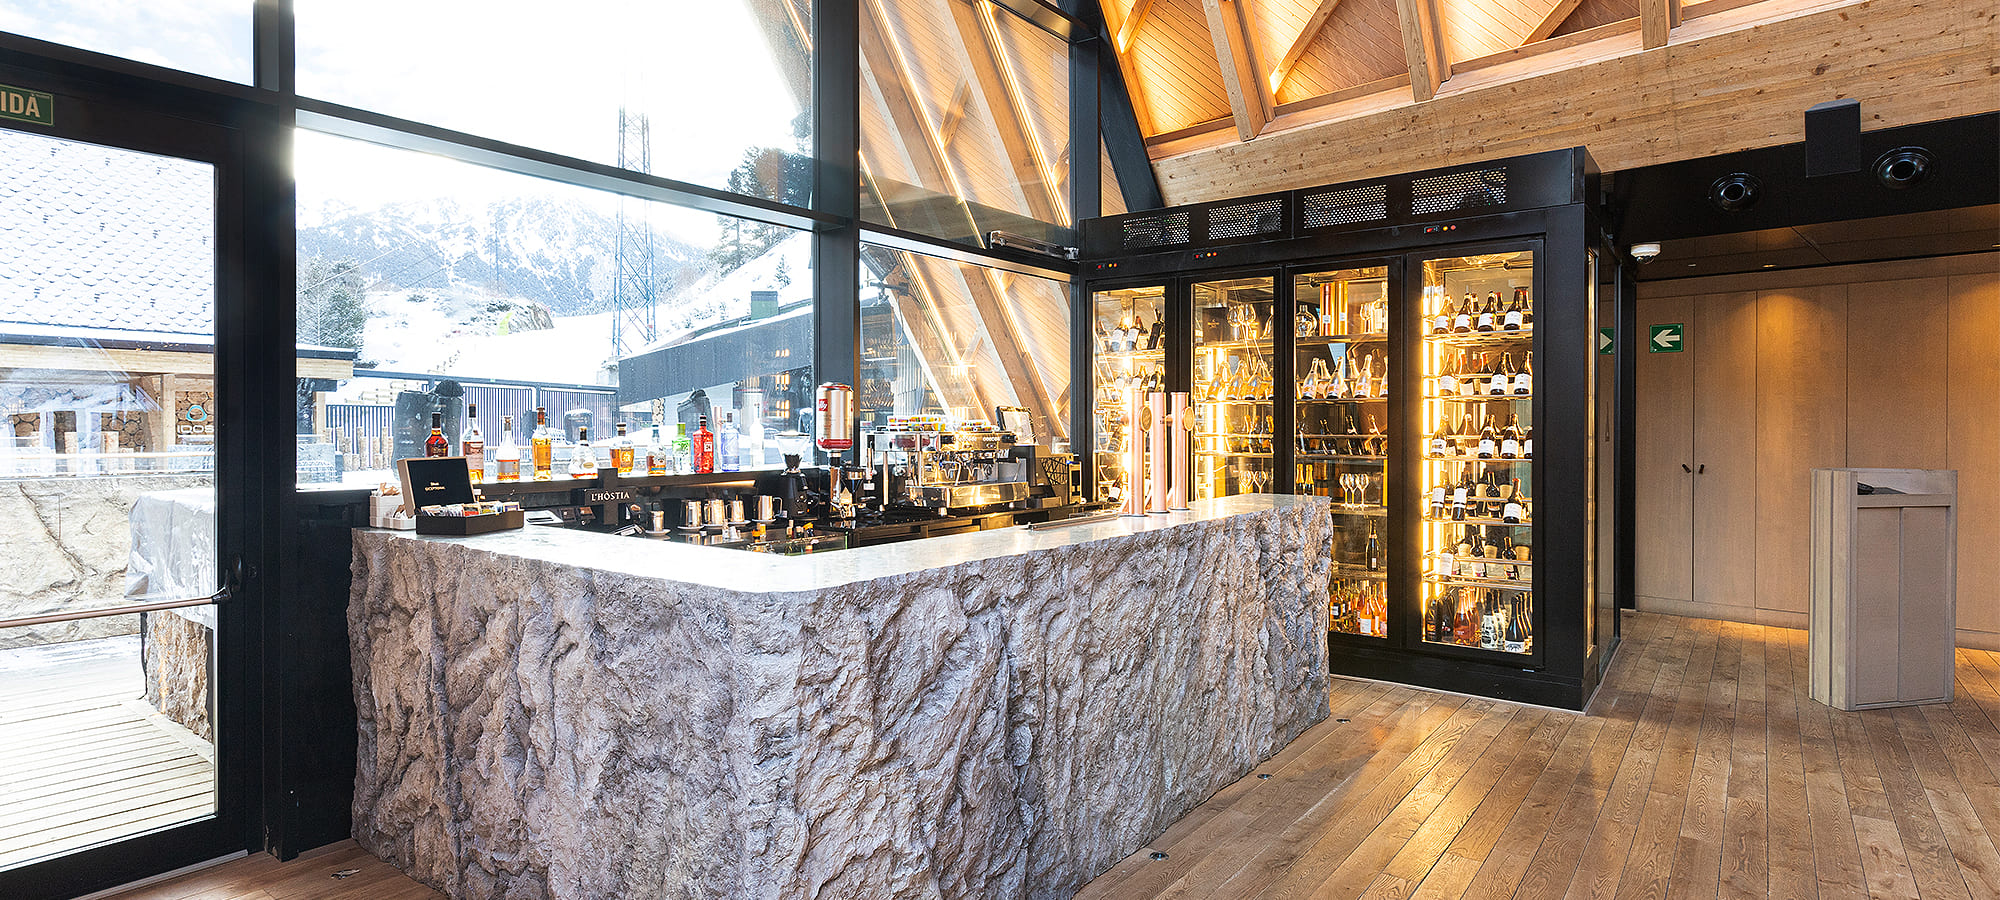 Vinacoteca i barra de bar en Après Ski Abarset Andorra